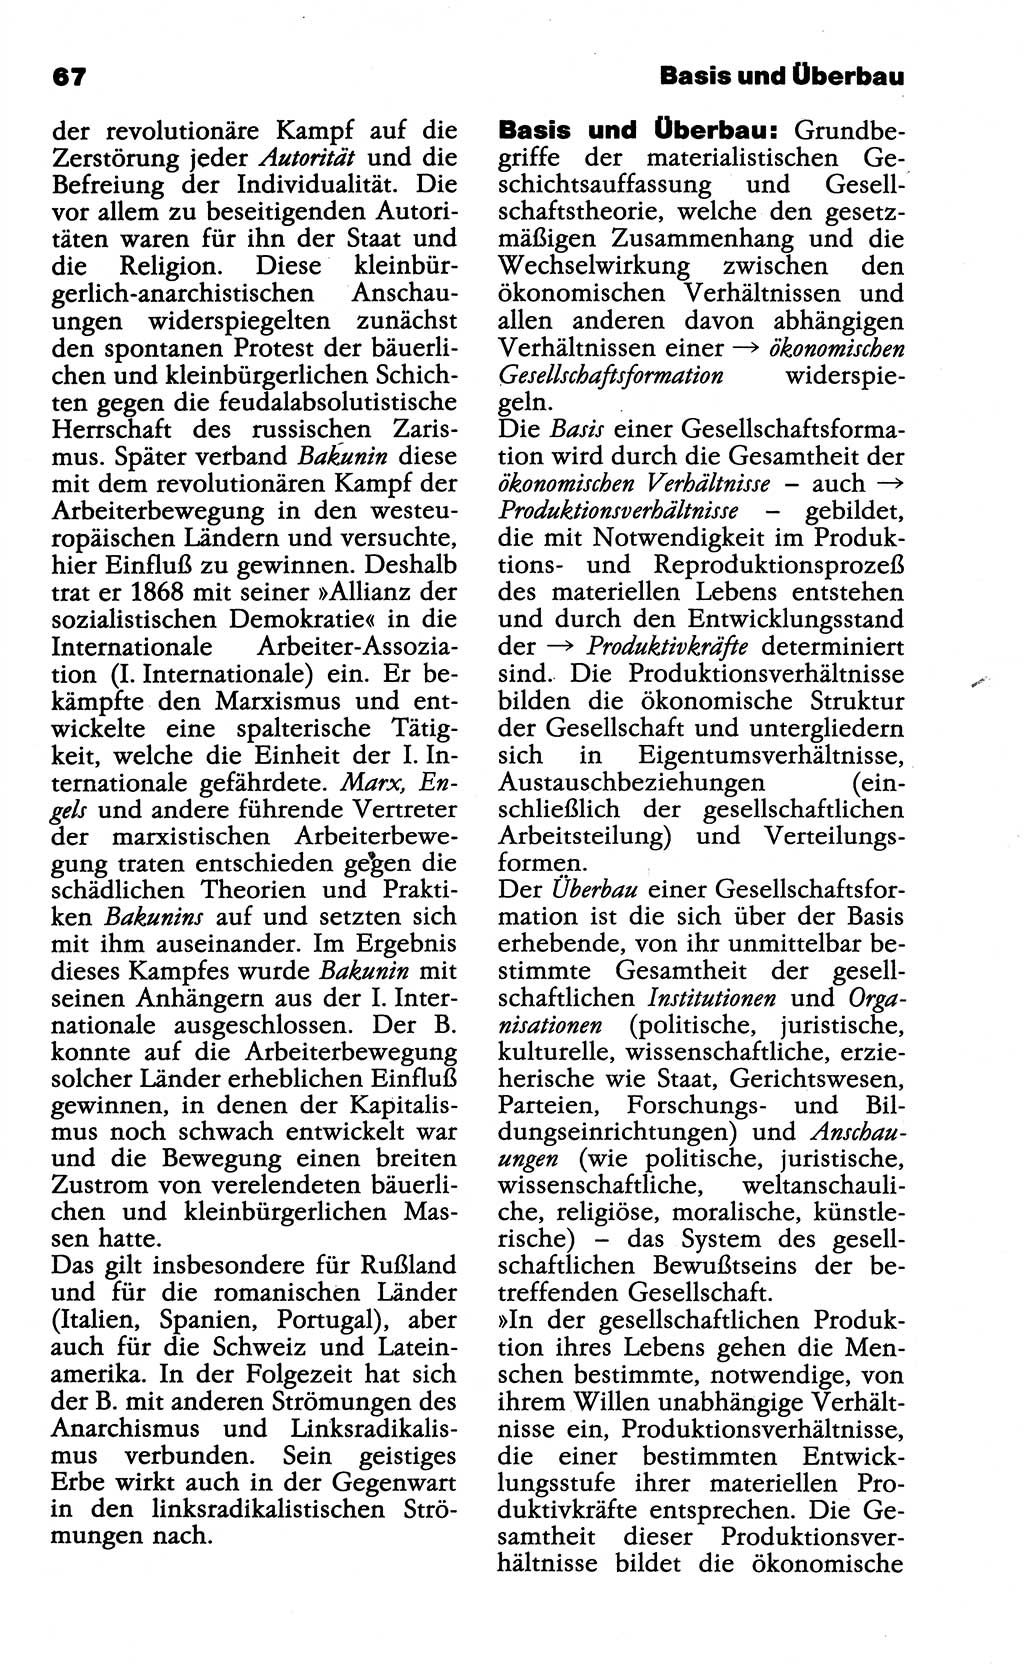 Wörterbuch der marxistisch-leninistischen Philosophie [Deutsche Demokratische Republik (DDR)] 1985, Seite 67 (Wb. ML Phil. DDR 1985, S. 67)